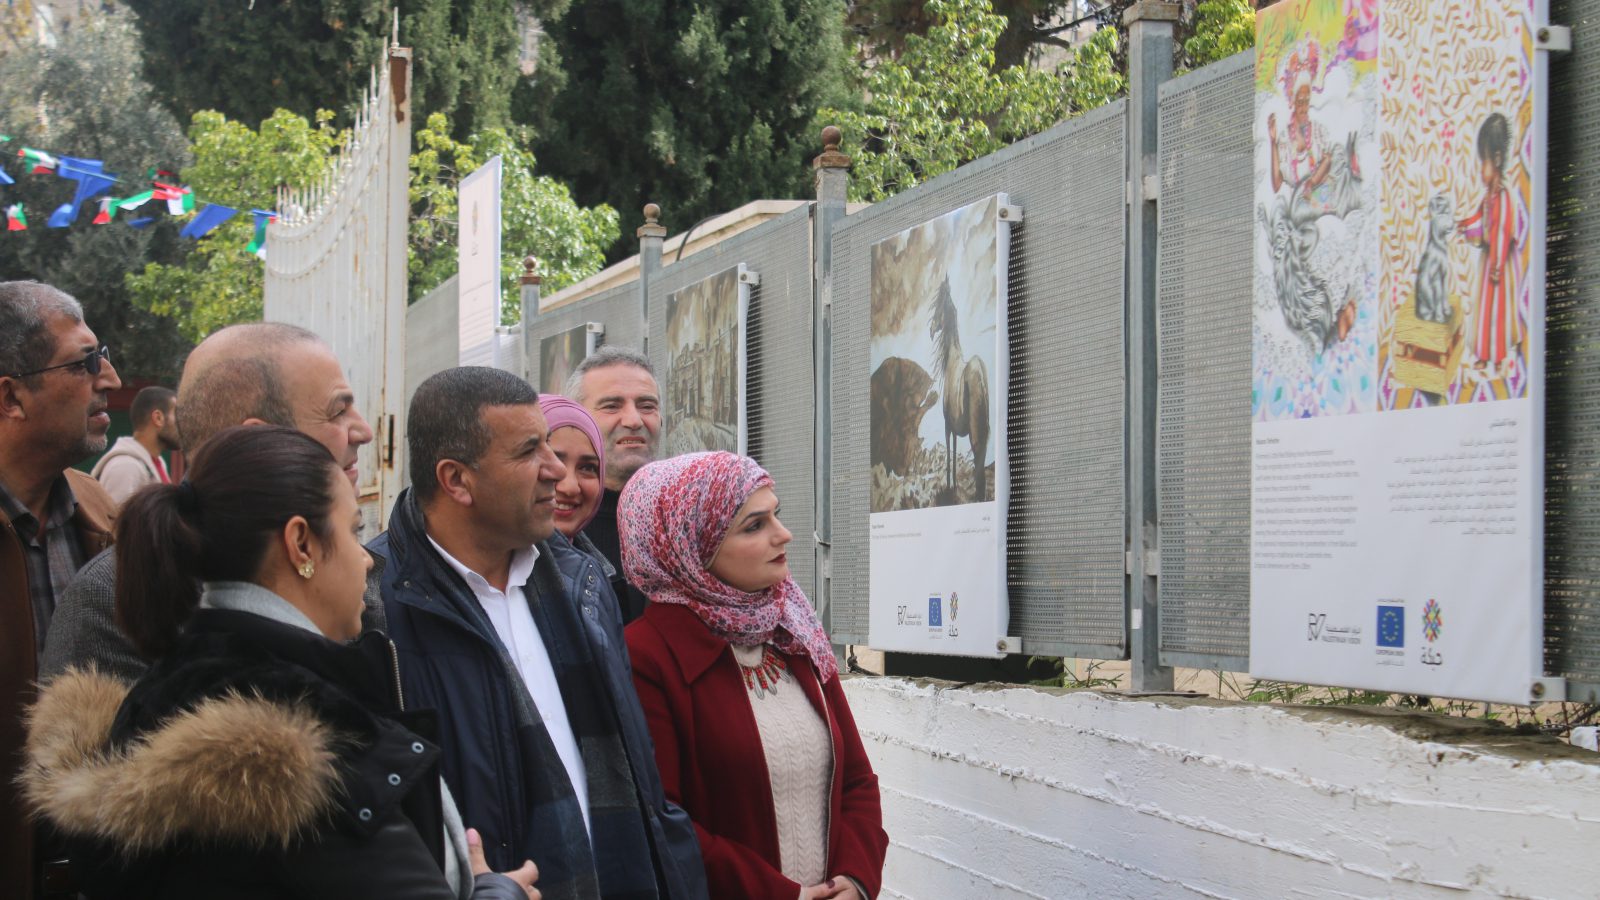 Le projet Habkeh, une initiative conjointe d’artistes européens et palestiniens 